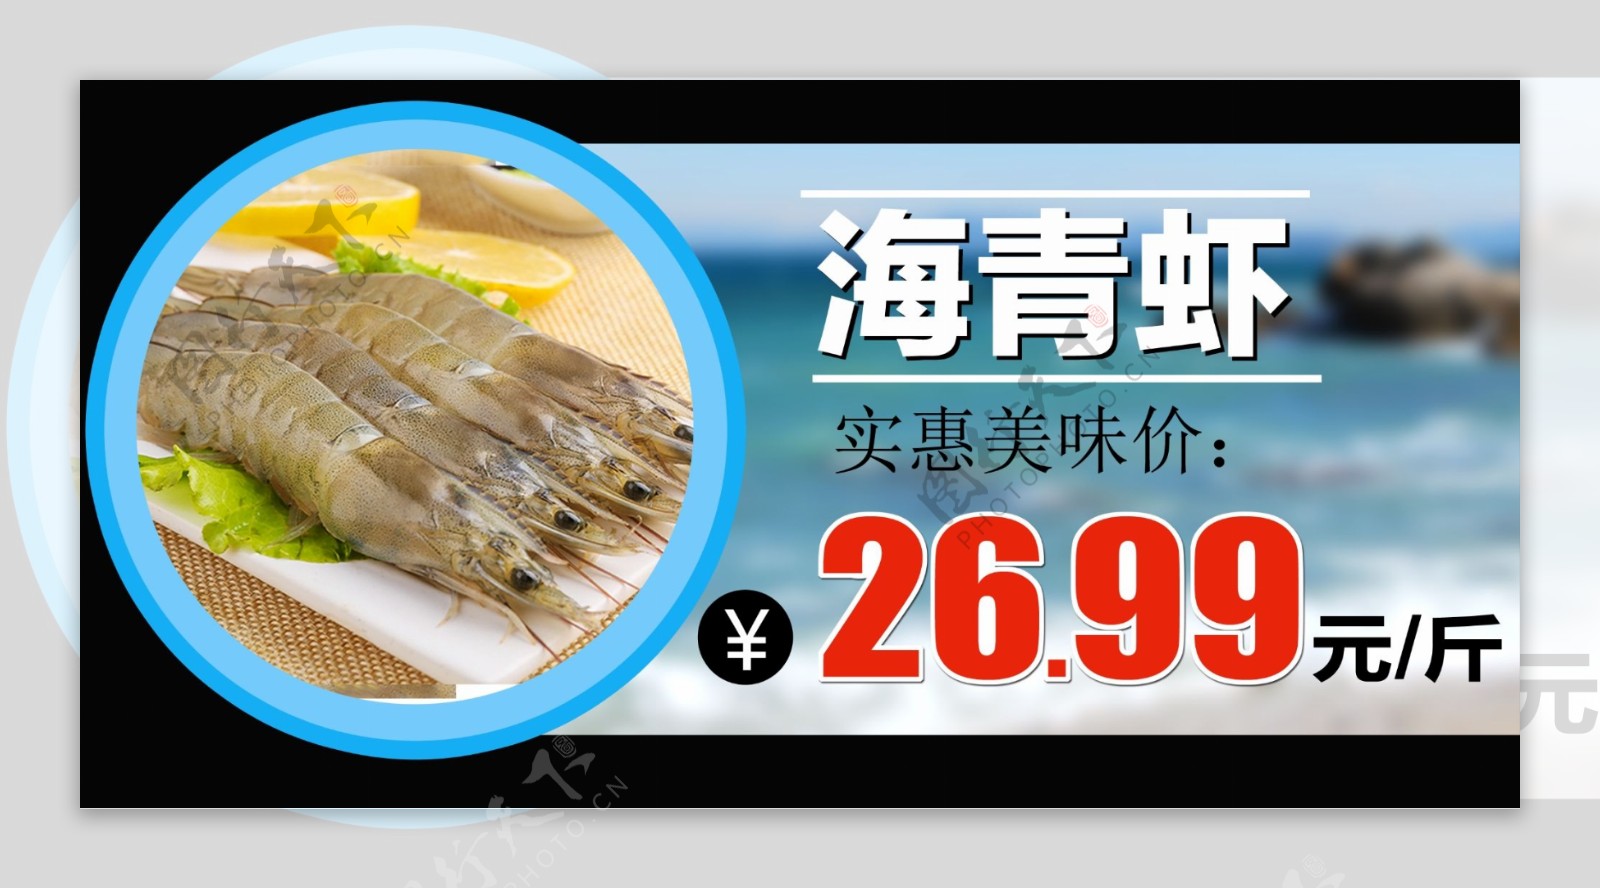 海青虾裁型